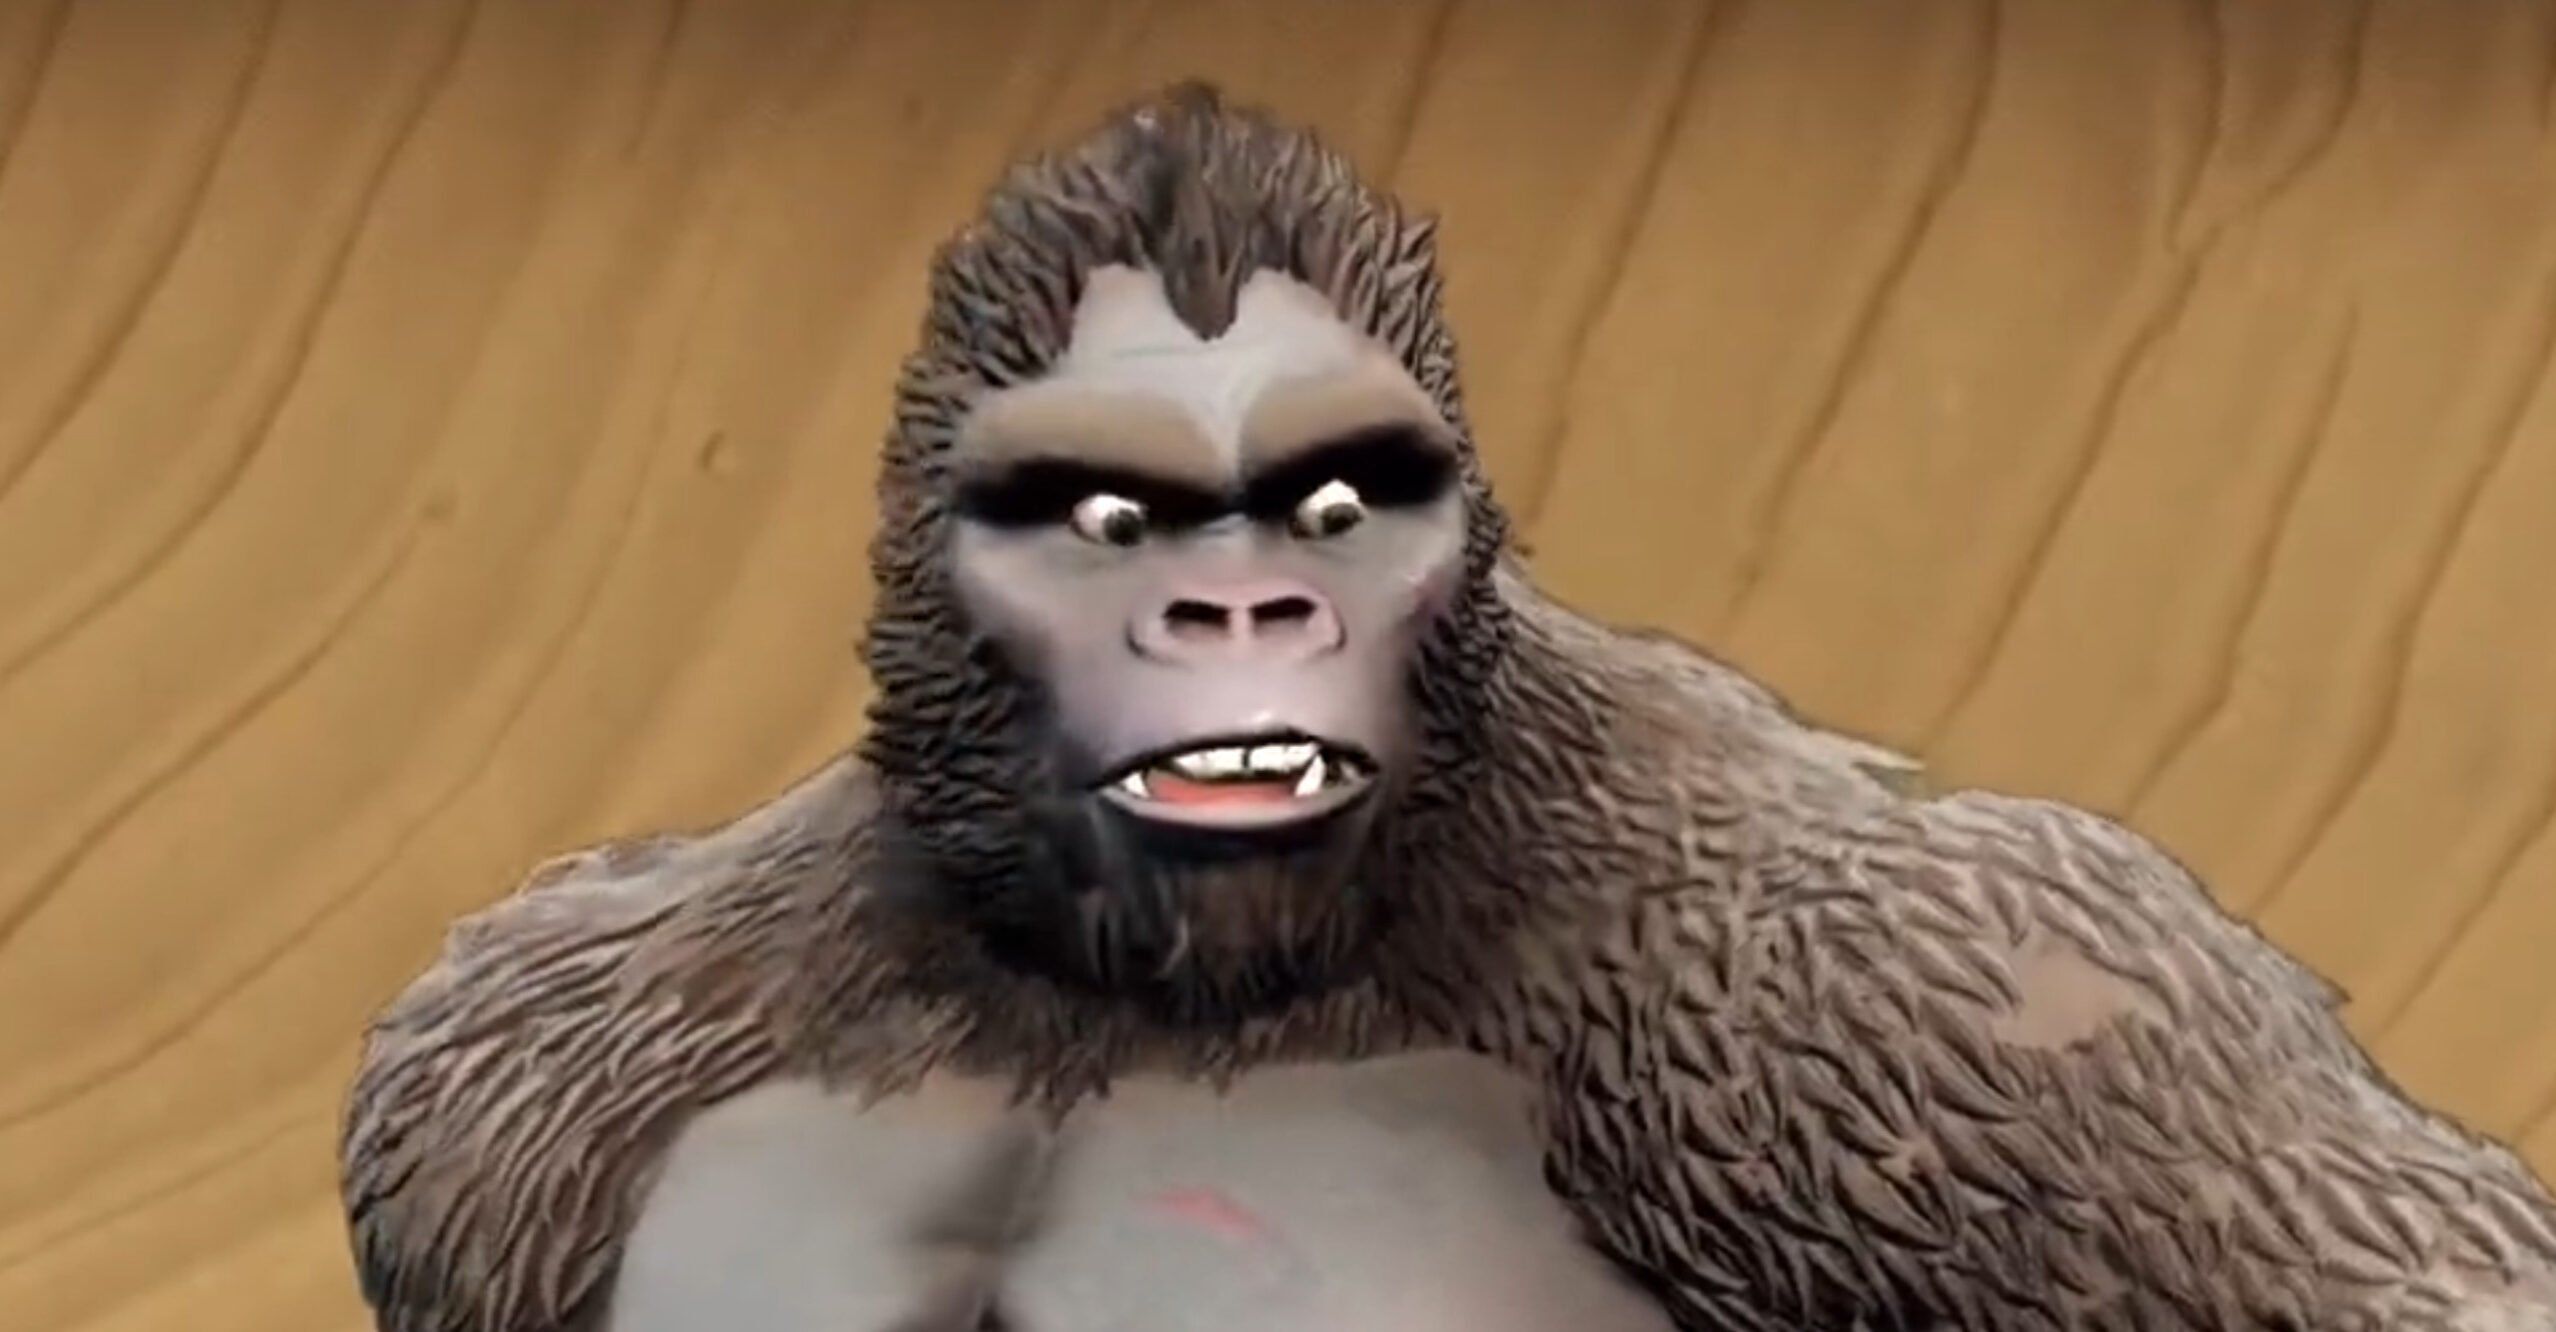 “تم استرداد Gollum”: لعبة King Kong الجديدة بقيمة 50 دولارًا تسمى “عملية احتيال كاملة”